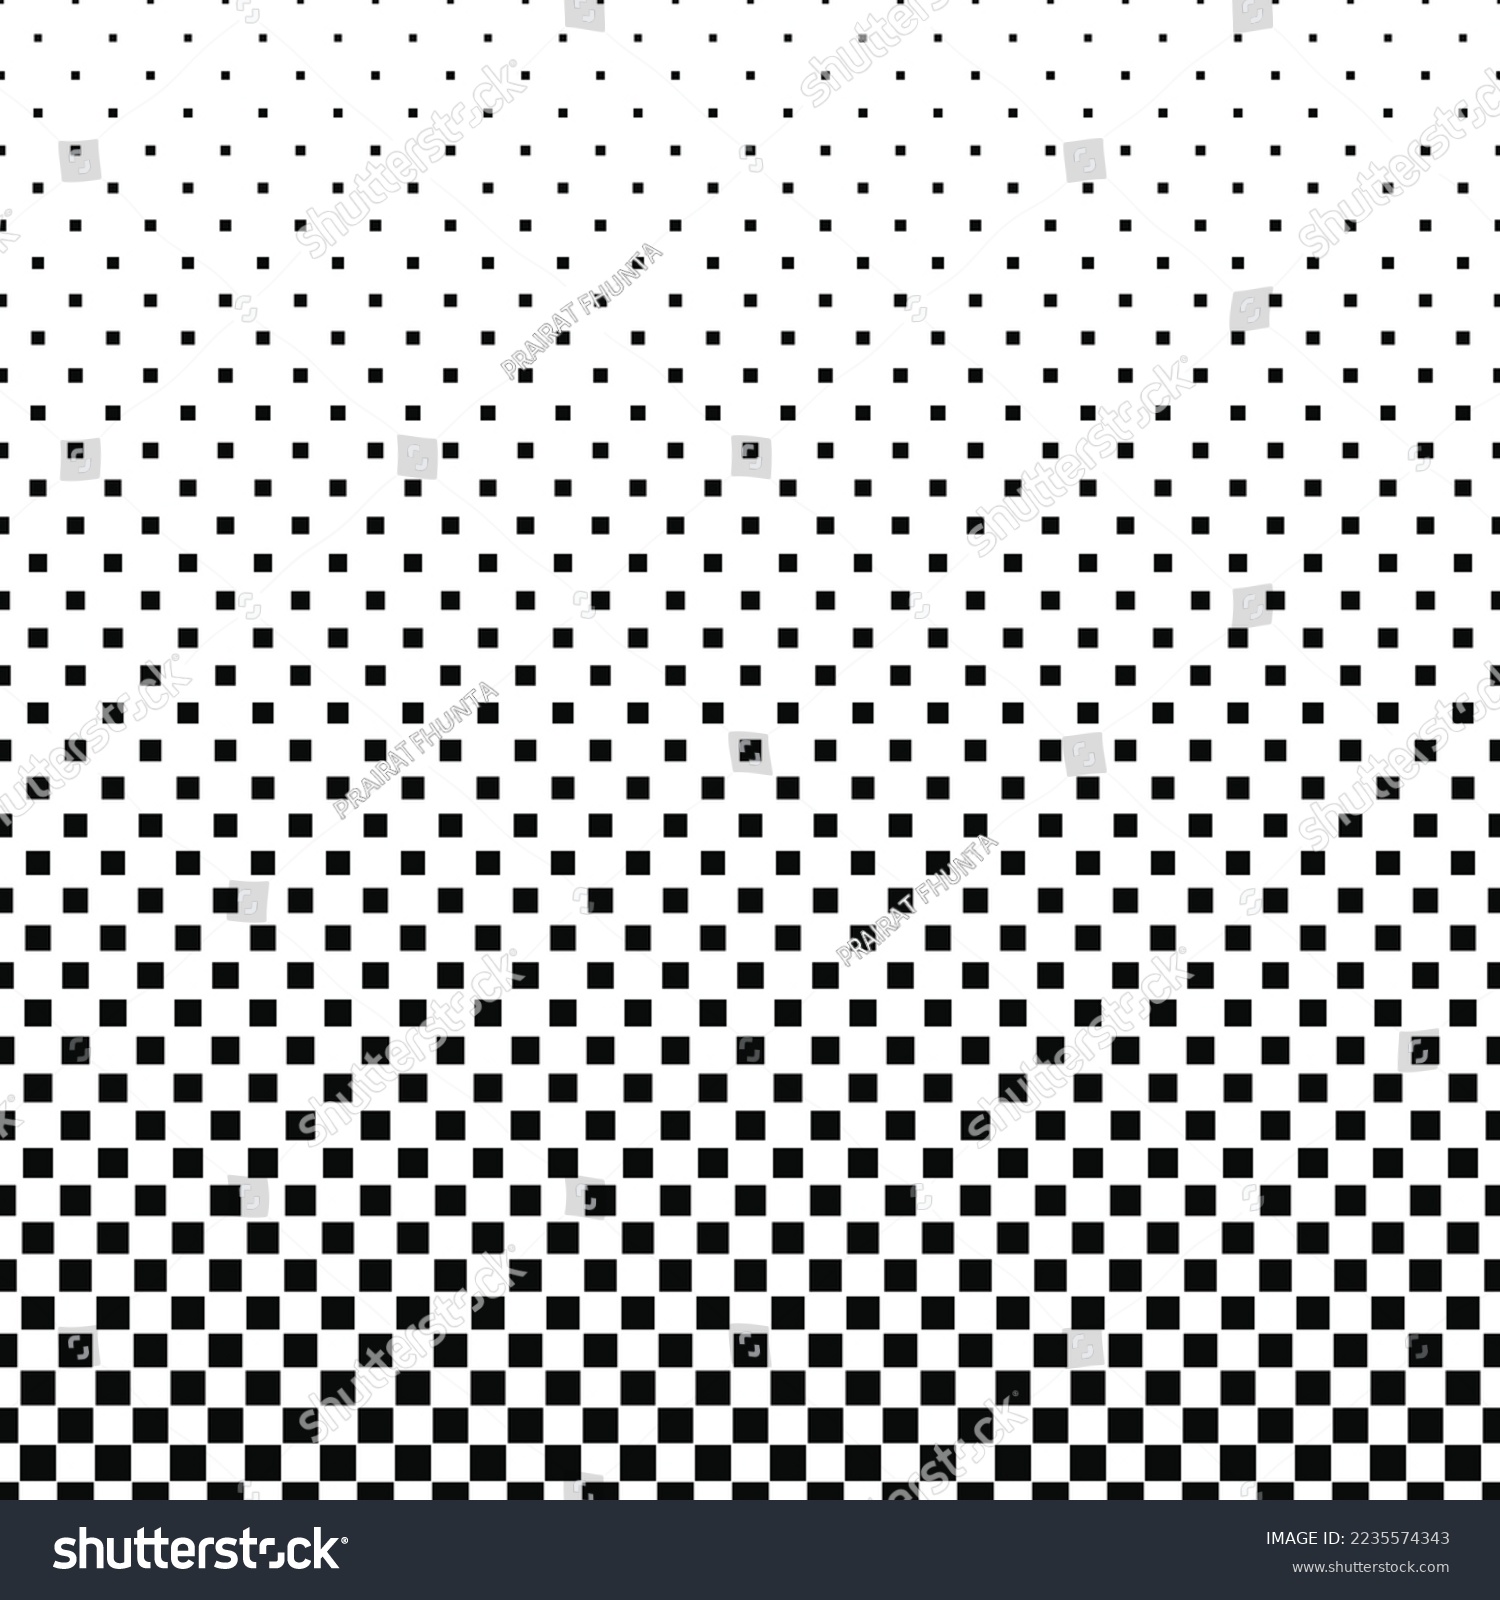 SVG of Square border halftone pattern background svg